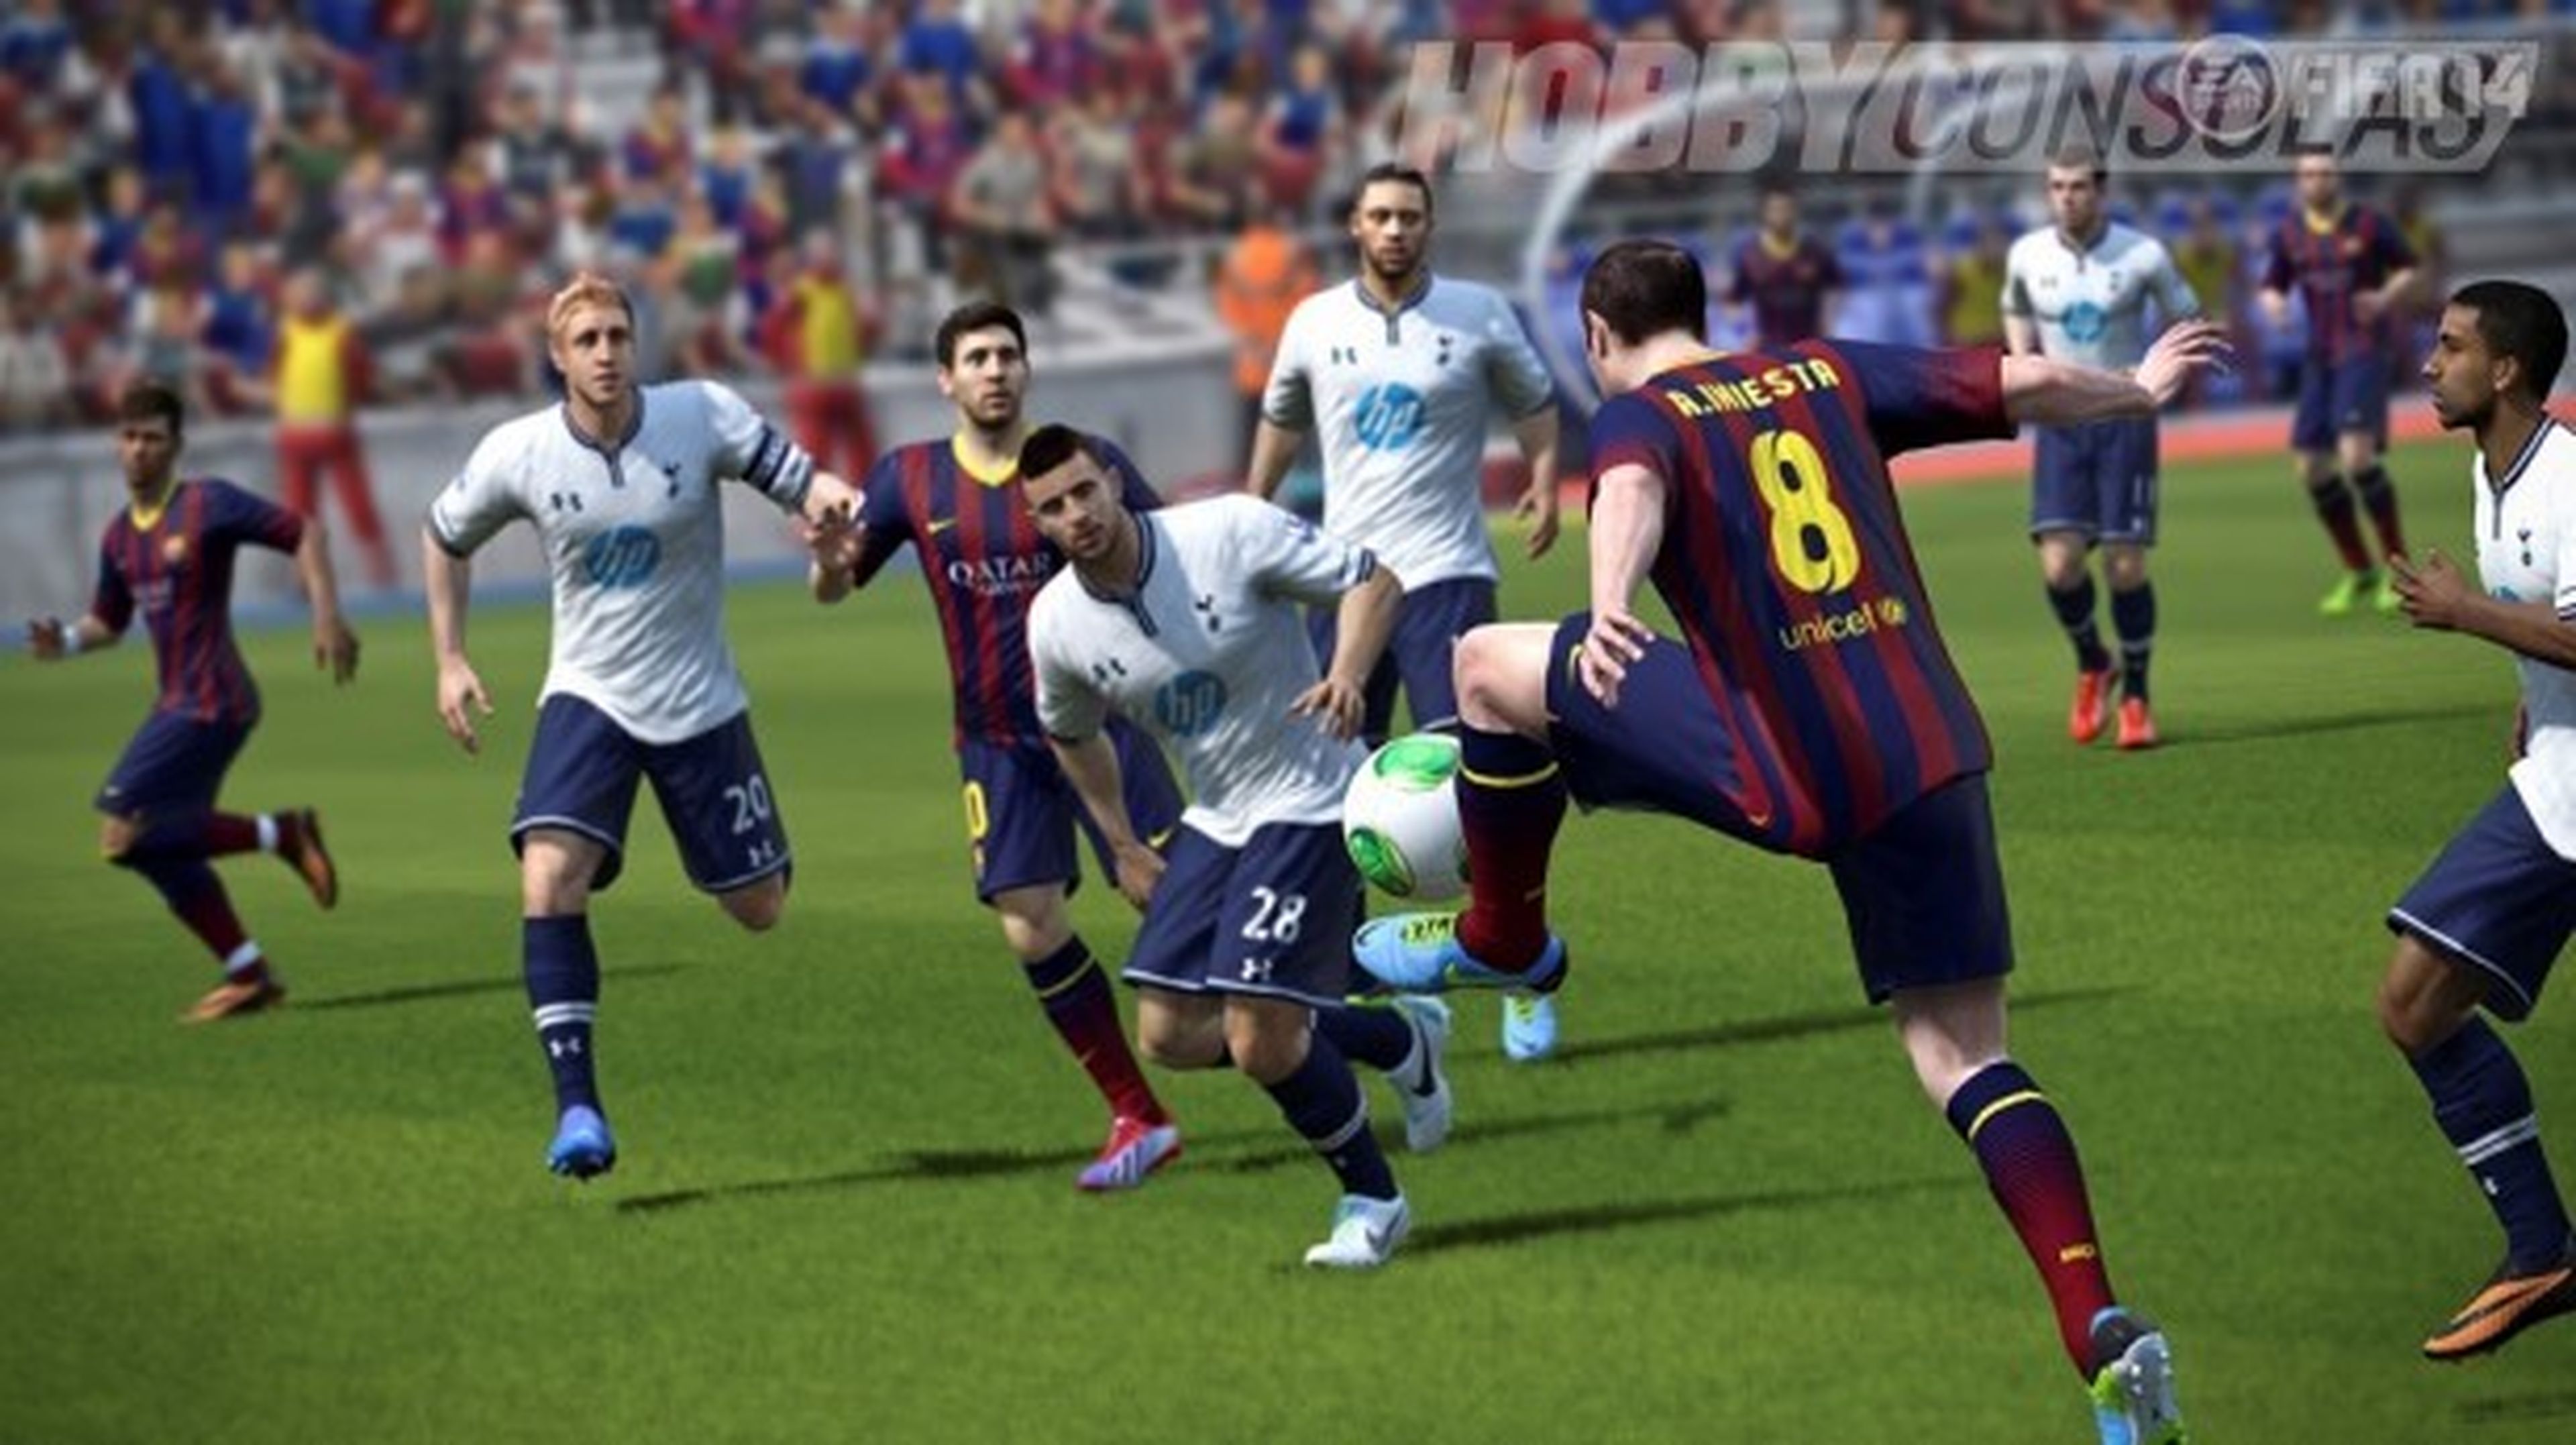 FIFA 14 recibe una nueva actualización en Xbox 360 y PS3